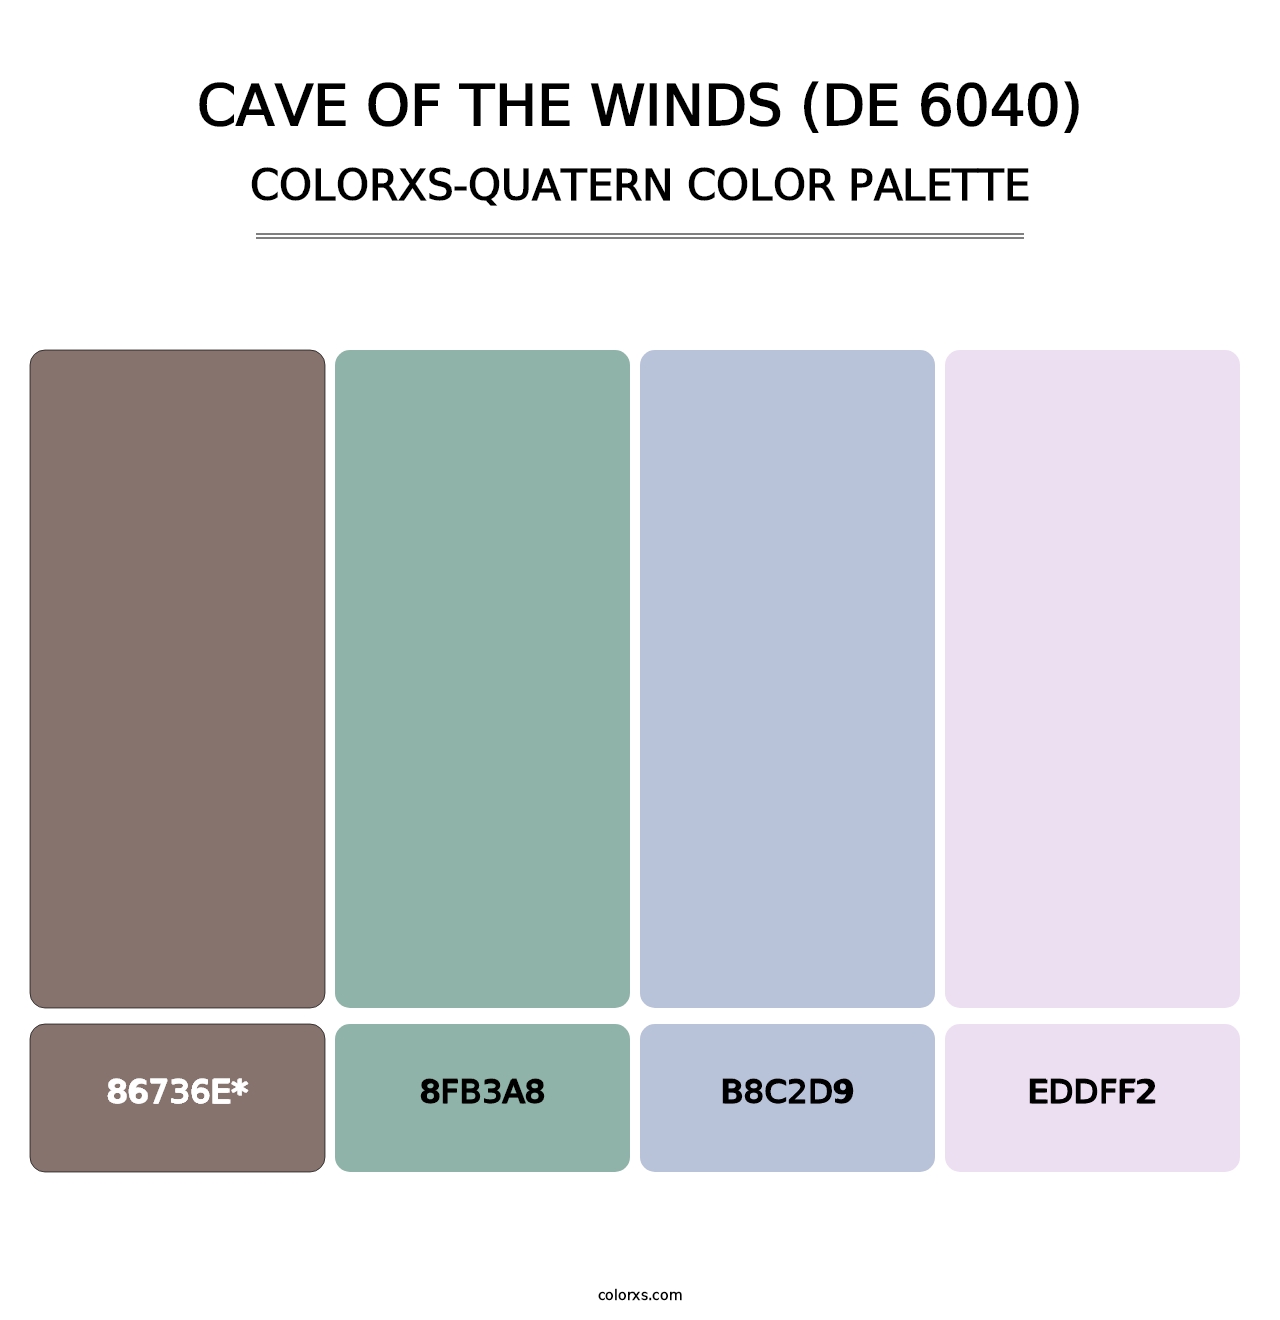 Cave of the Winds (DE 6040) - Colorxs Quatern Palette